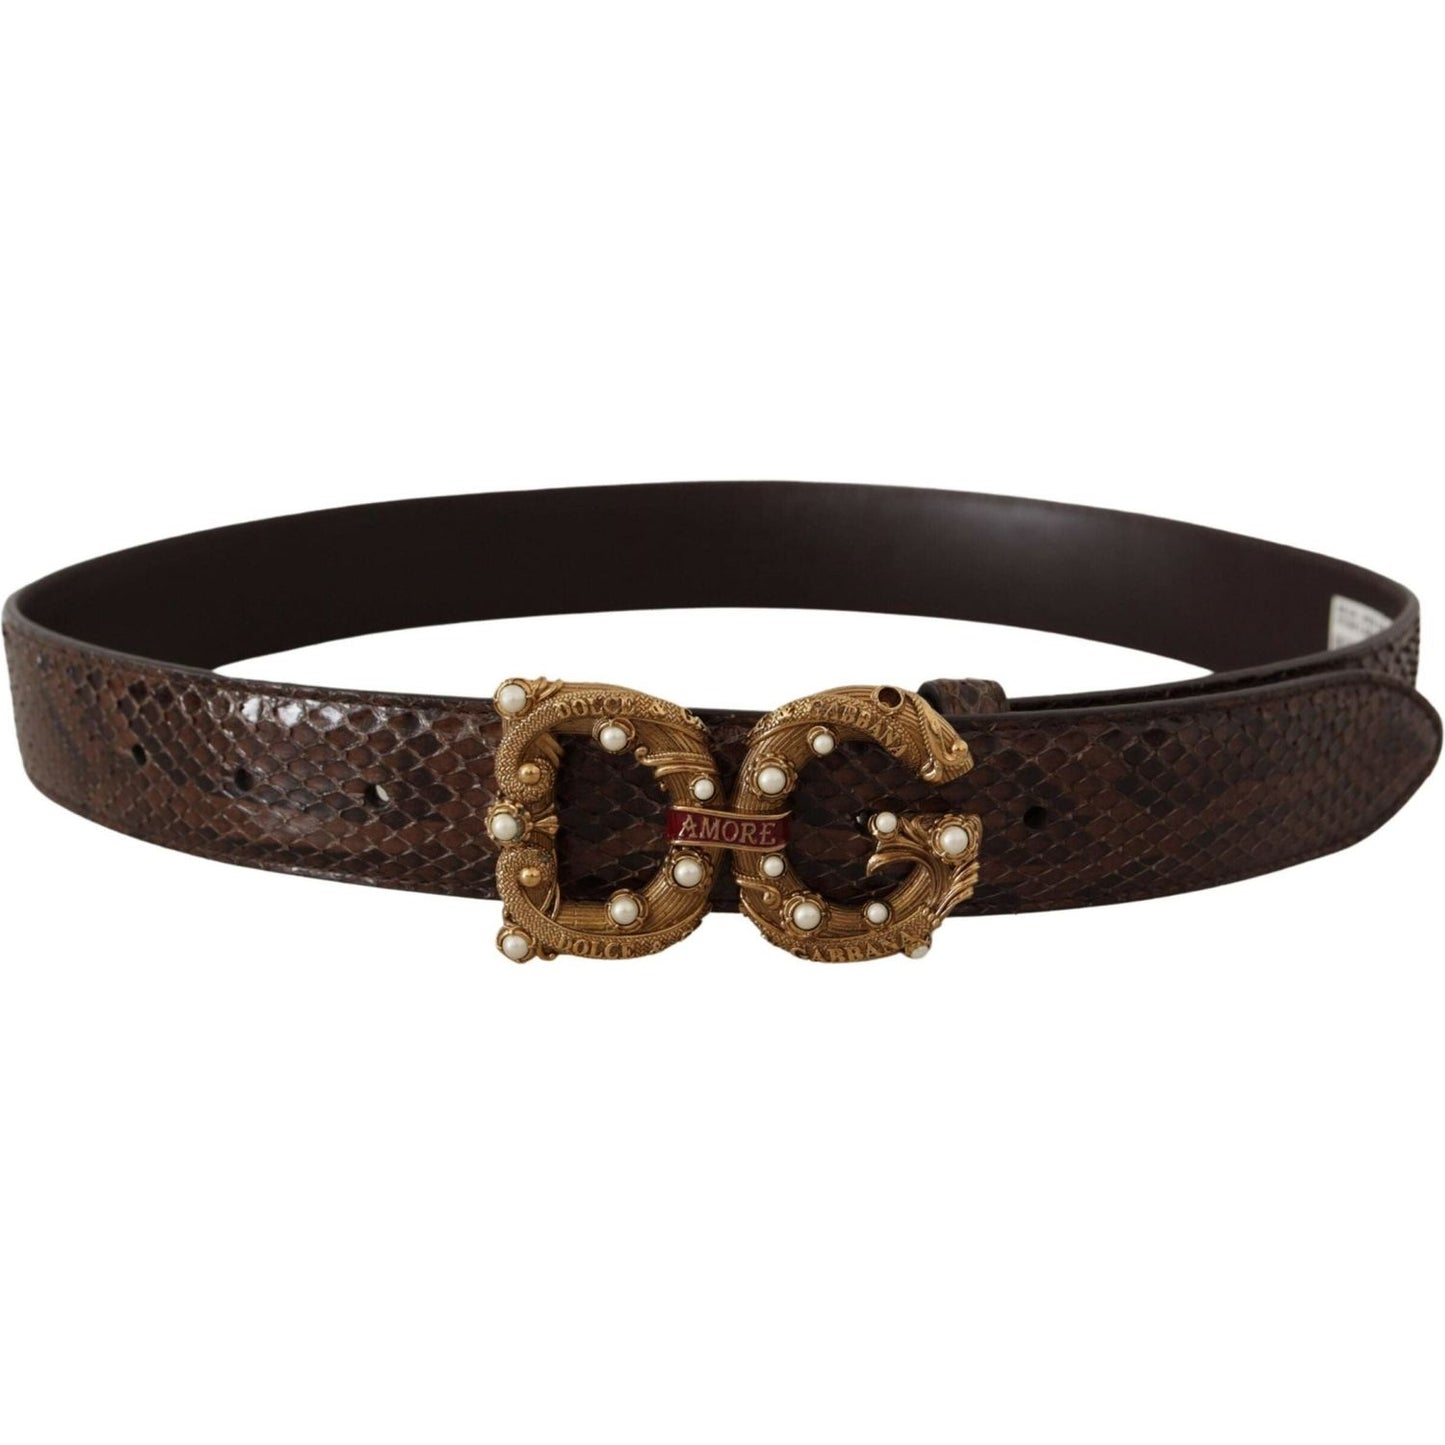 Dolce & Gabbana Elegant Snakeskin Leather Belt brown-amore-animal-print-exotic-leather-logo-buckle-belt